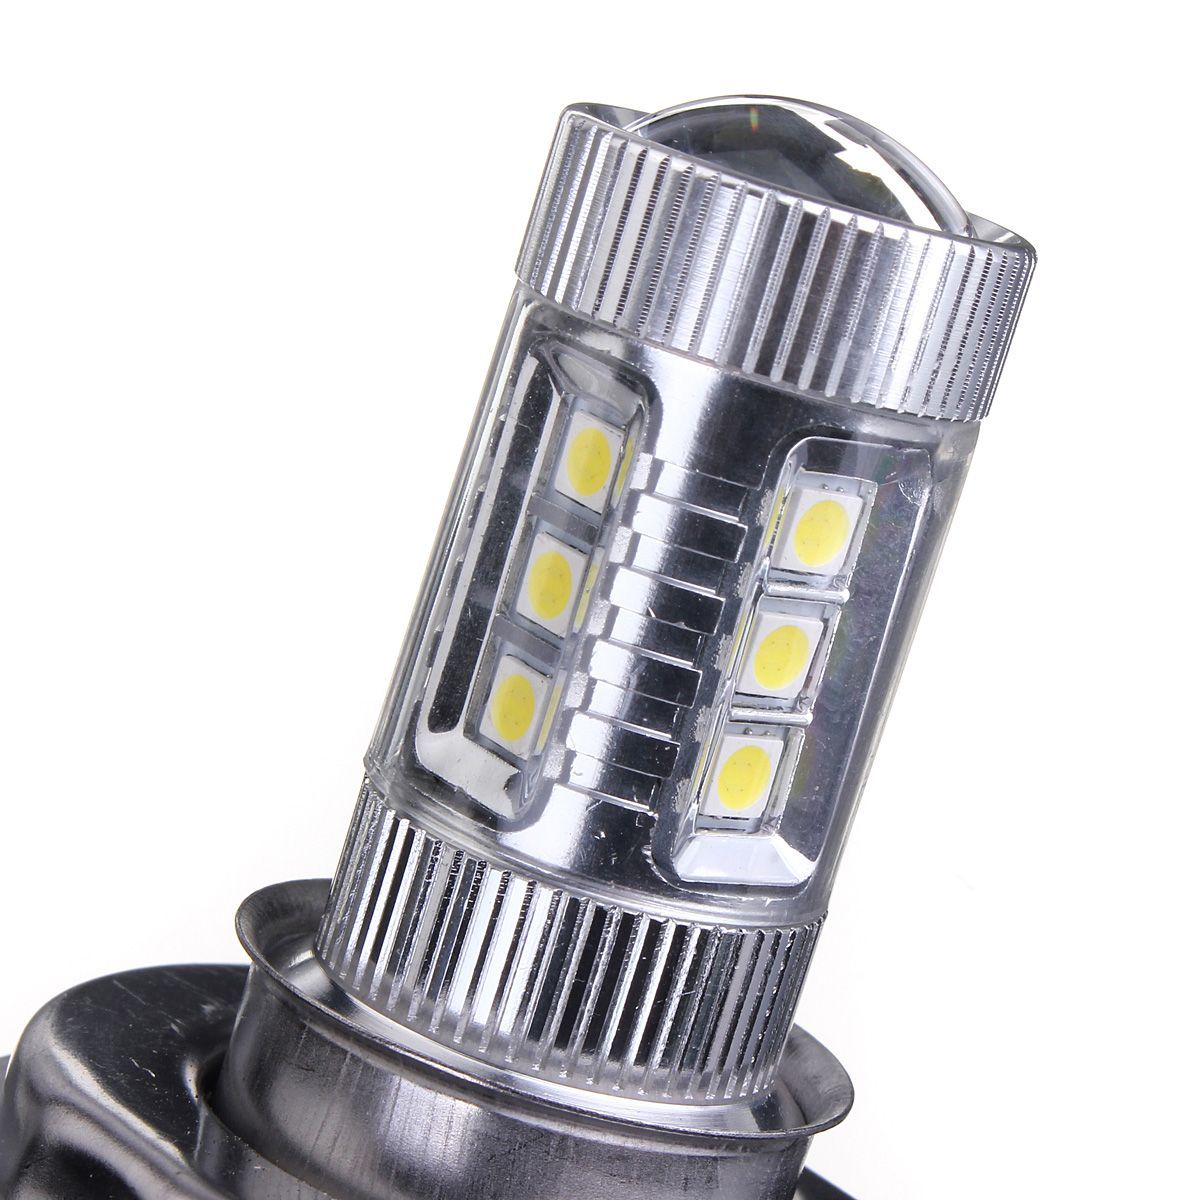 48W-H4-LED-Fog-Lights-High-Low-Headlight-Bulb-Daytime-Running-Lamp-7000K-White-for-Car-Motocycle-958039